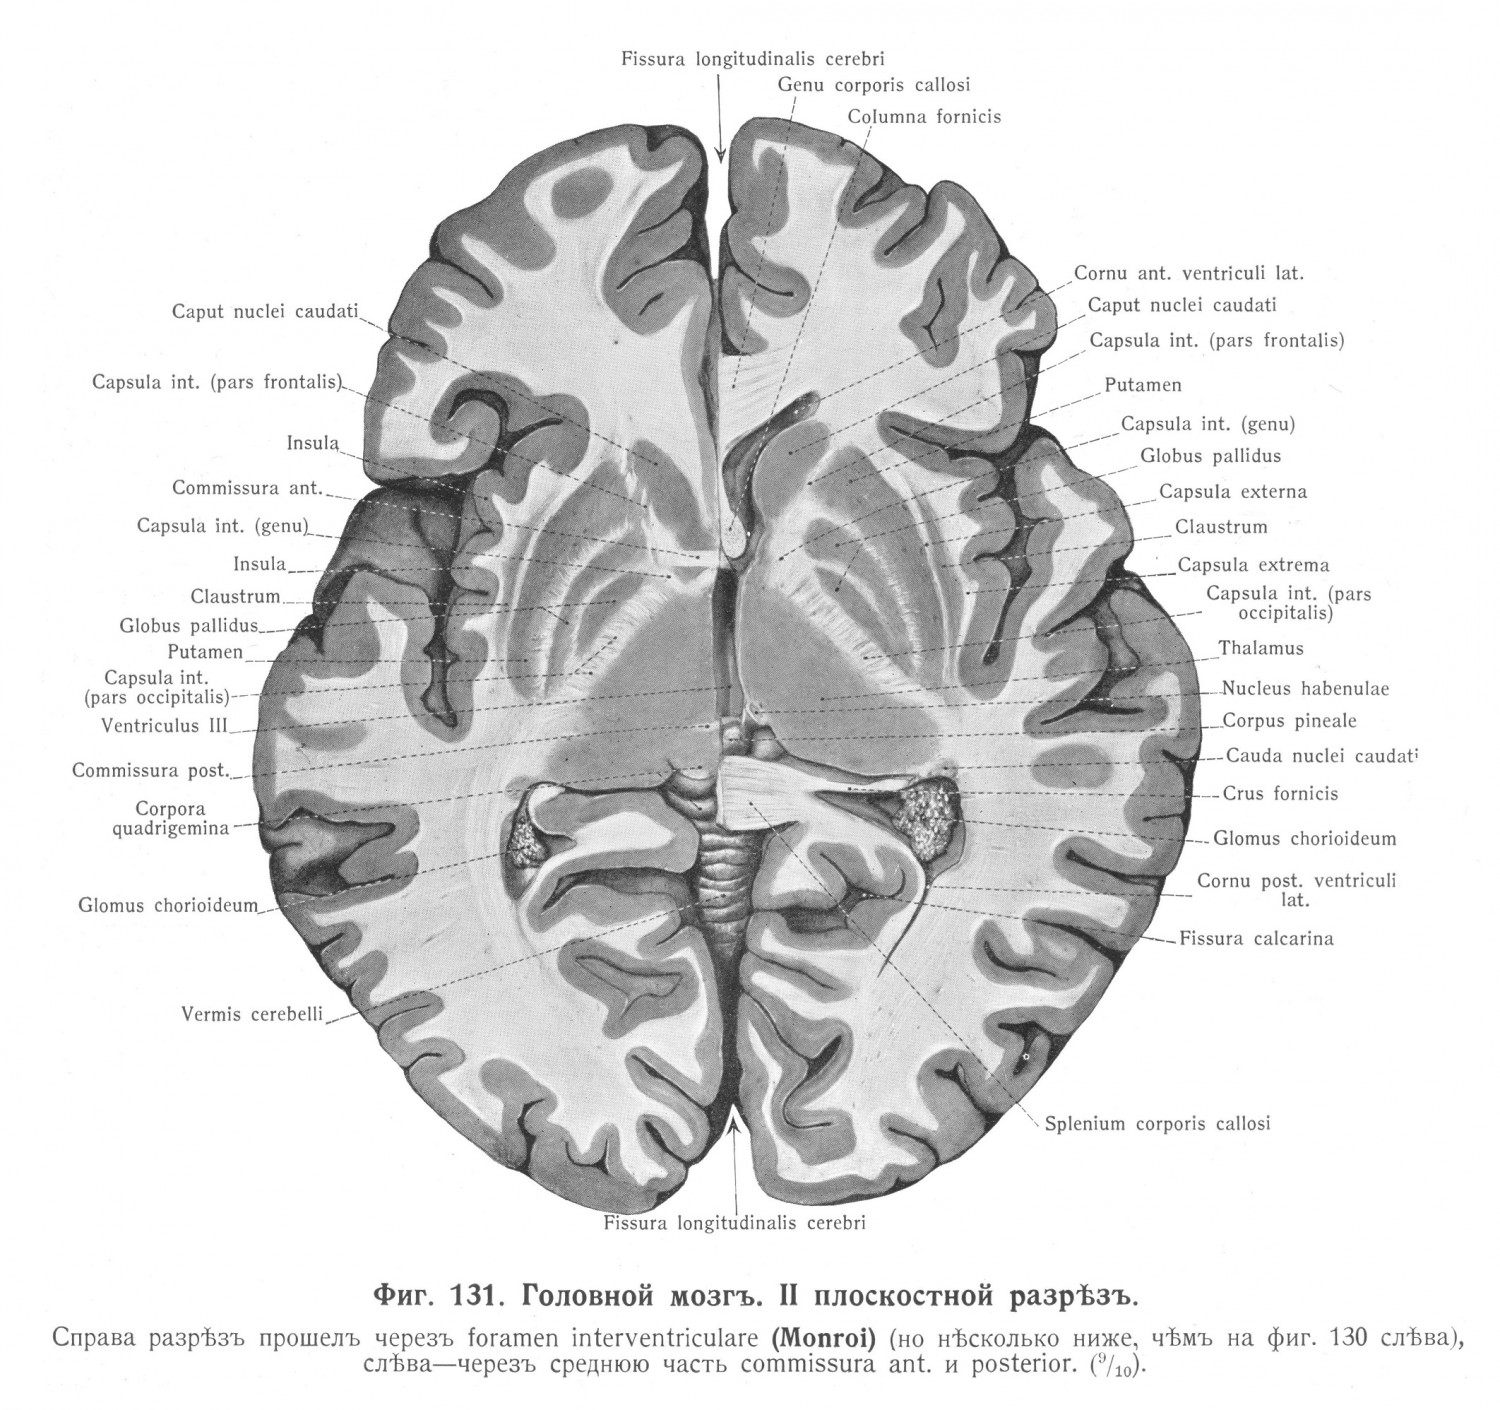 Головной мозг II плоский разрез